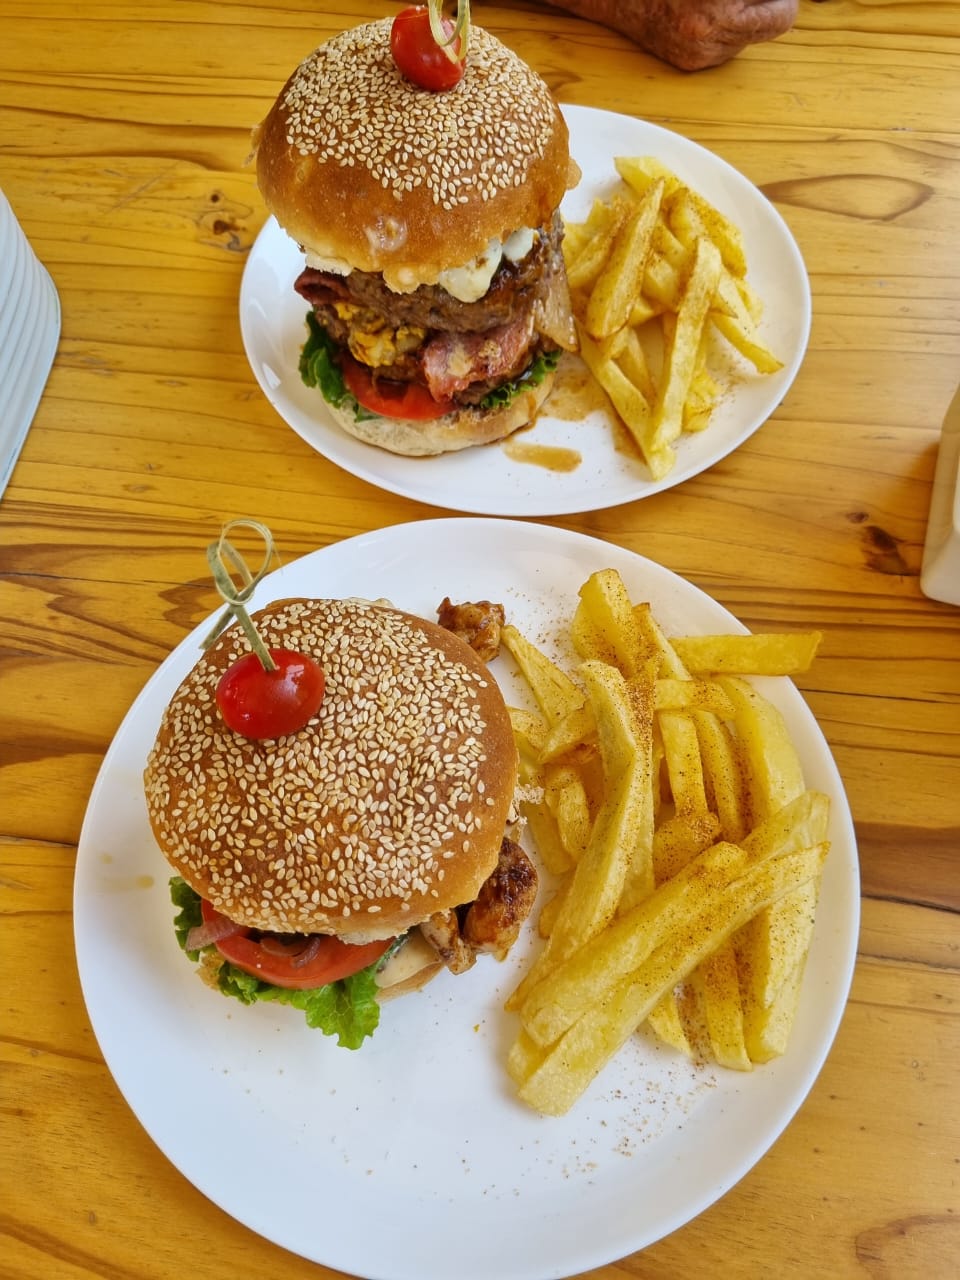 Burgers and Chips at Nyala Safari Lodge